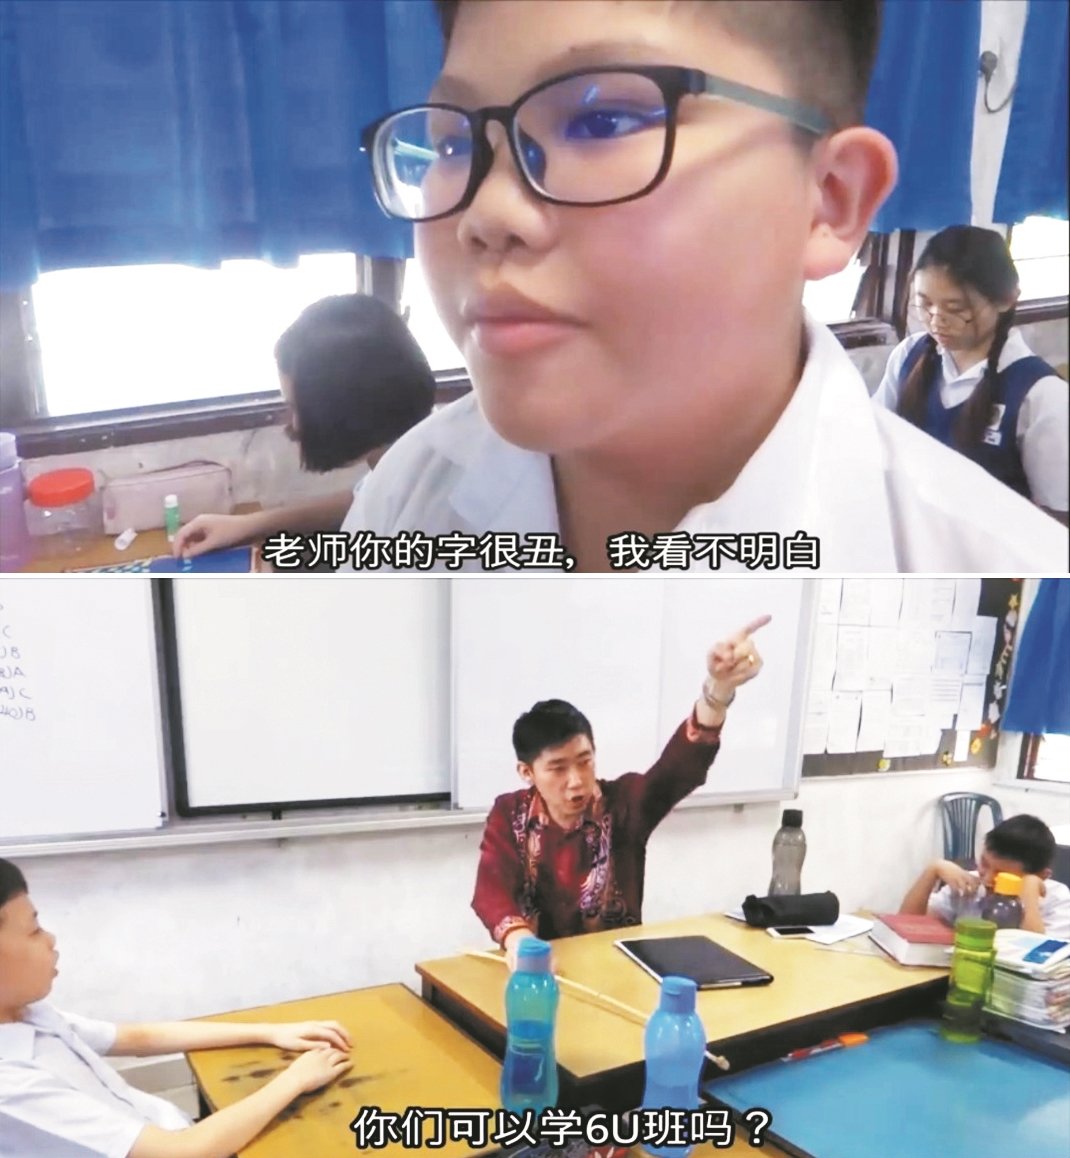 许万旺也会不时拍摄有关校园题材的娱乐短片，并邀来学校老师和学生一同参与。